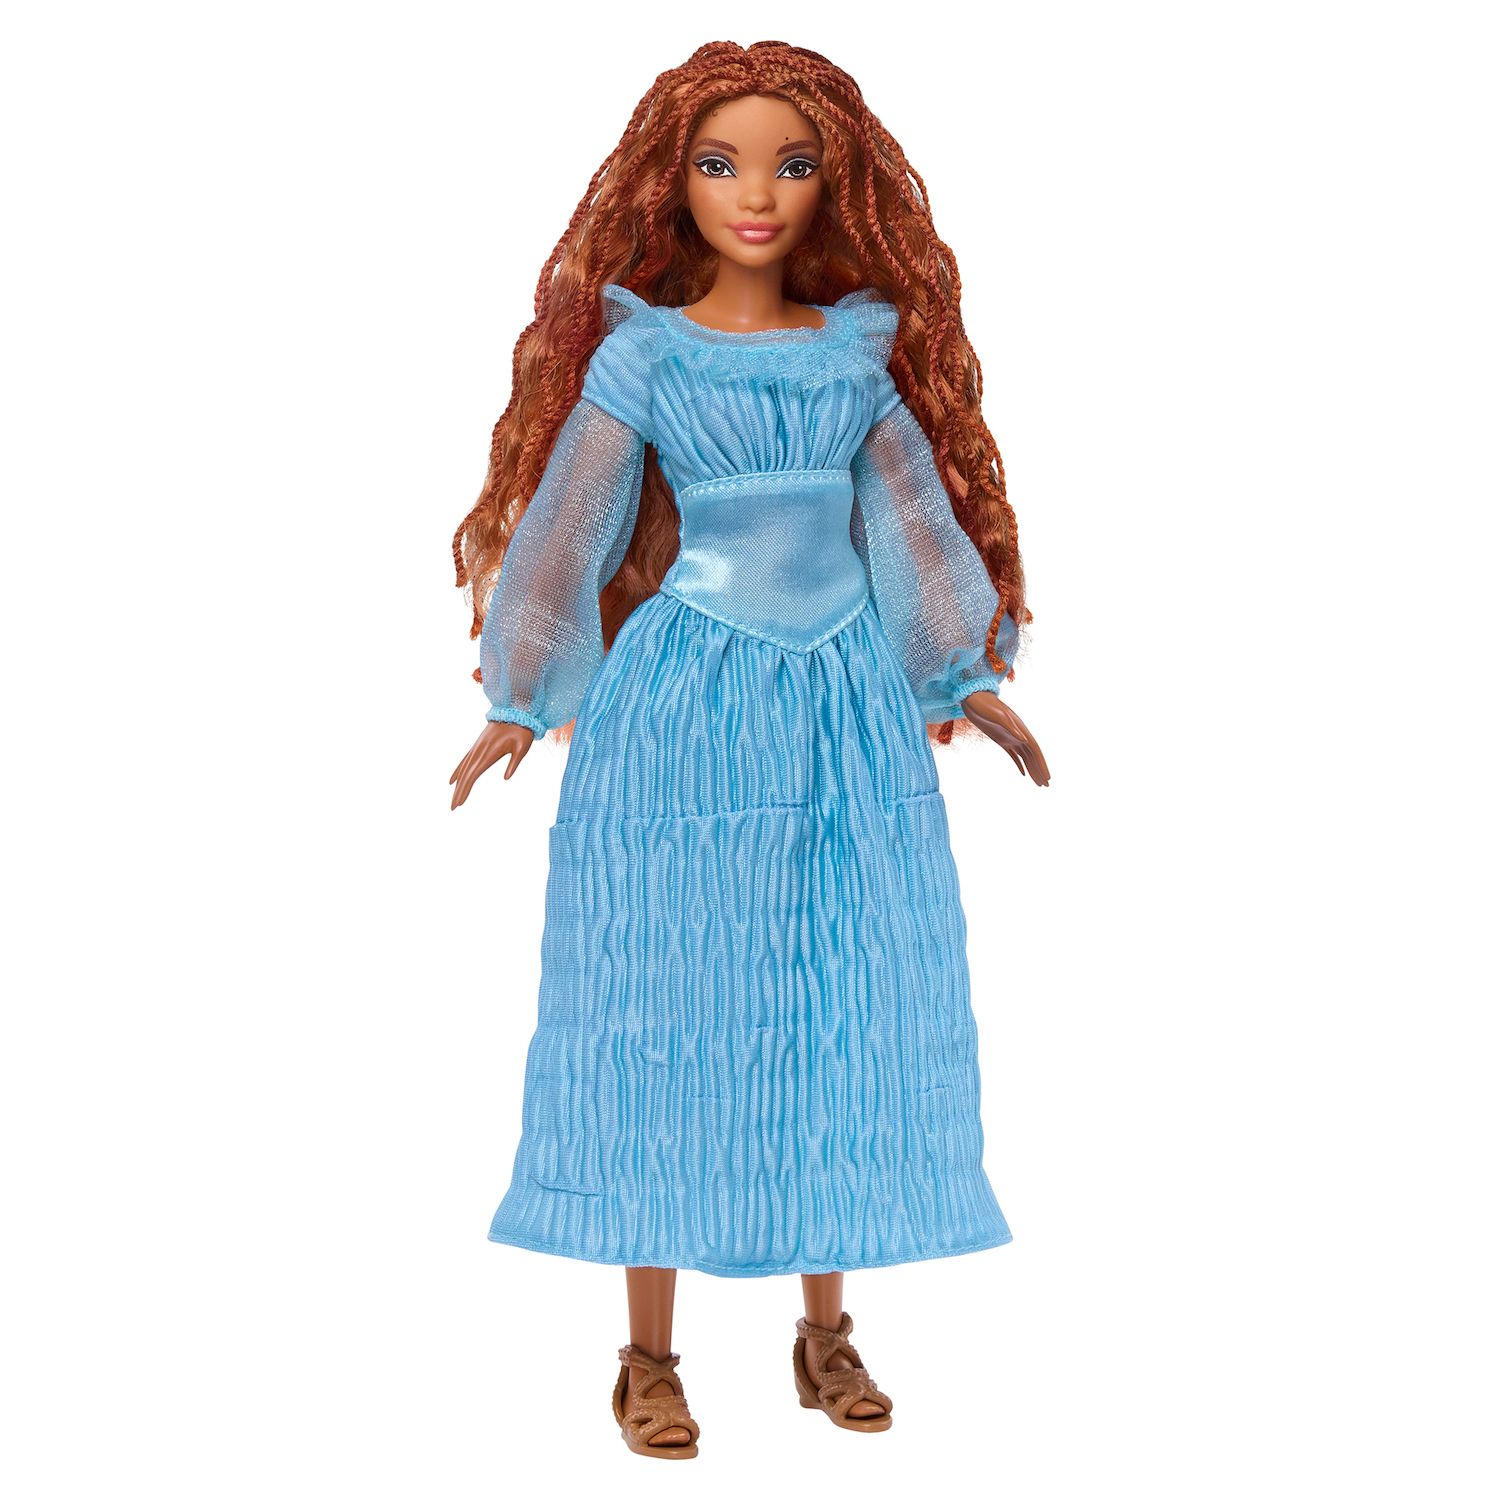 Модная кукла Диснея «Русалочка Ариэль на суше» от Mattel Mattel кукла принцессы диснея белоснежка mattel